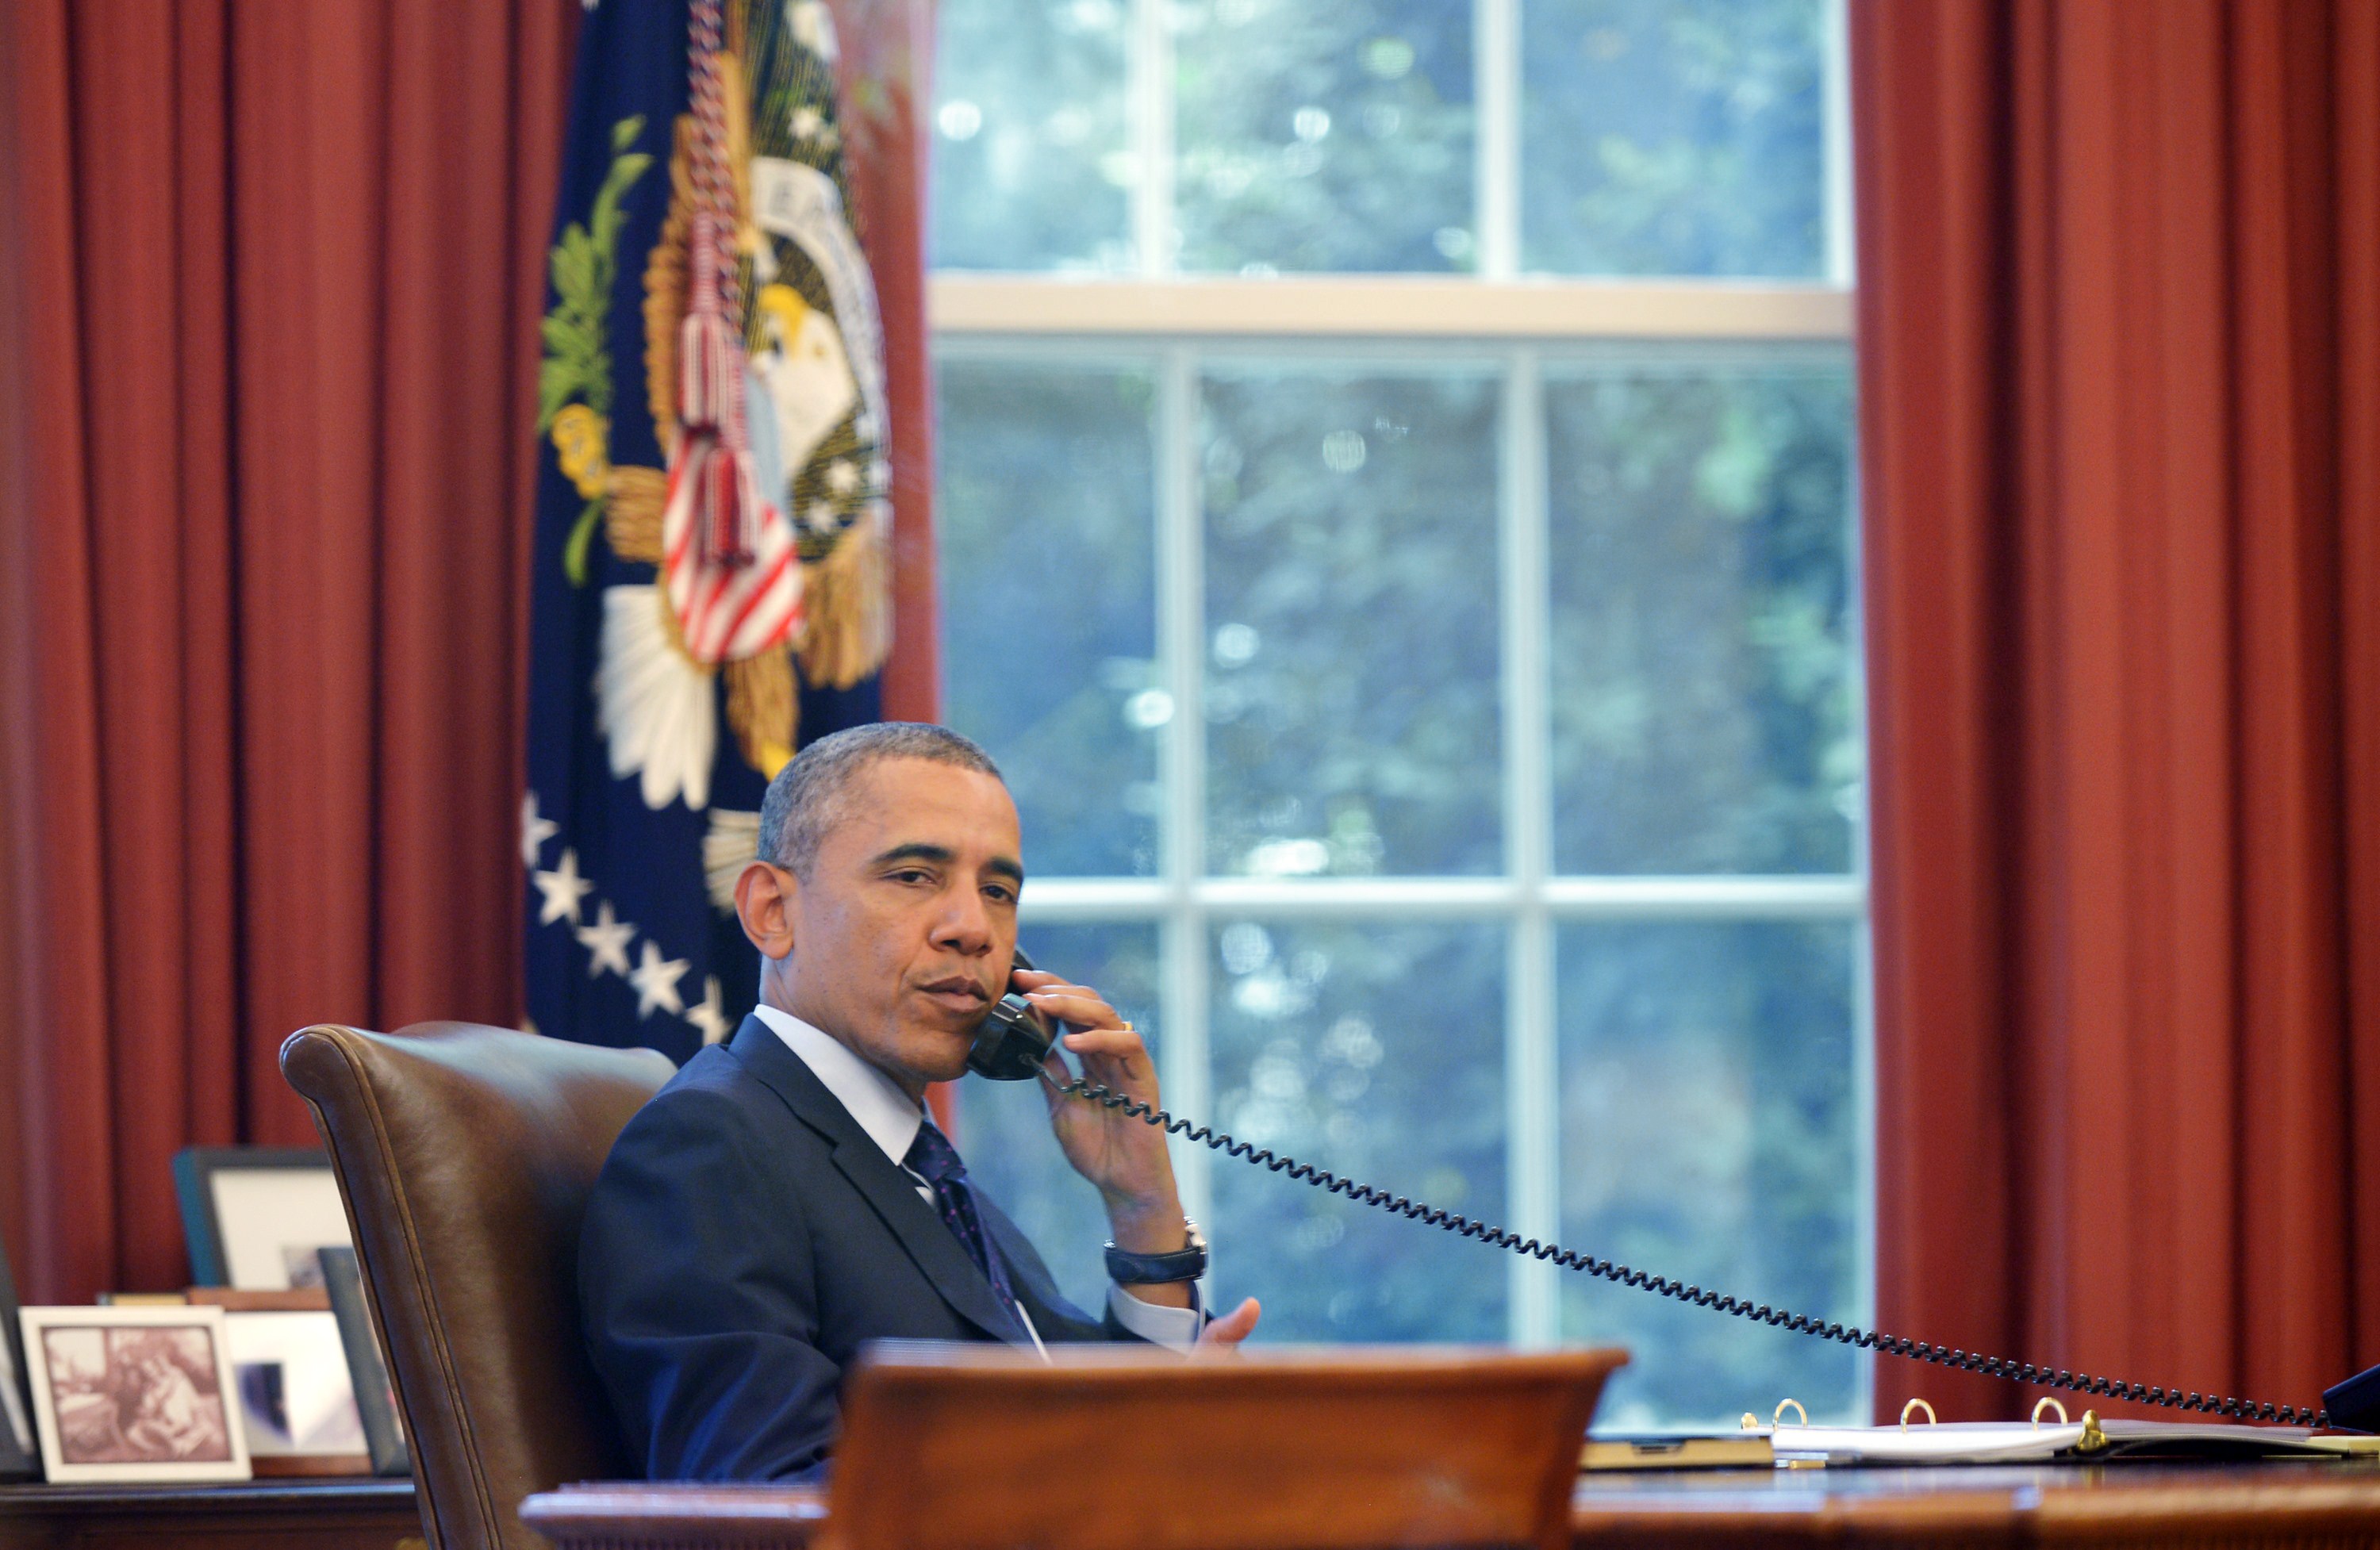 GettyImages-اوباما-في-مكتبه.jpg